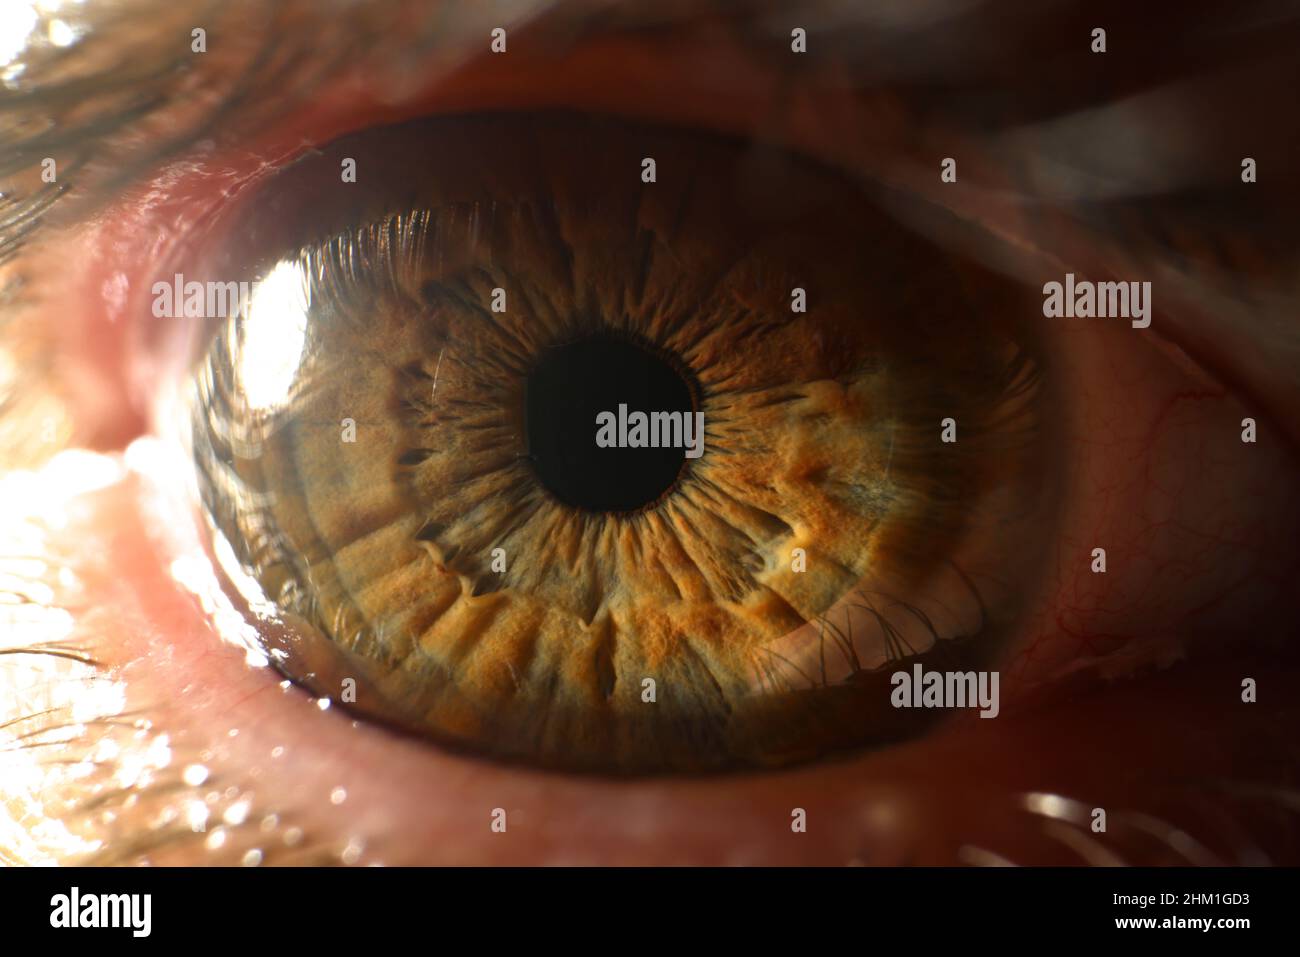 Primo piano dei dettagli dell'occhio umano. Macro fotografia di occhi marroni primo piano Foto Stock